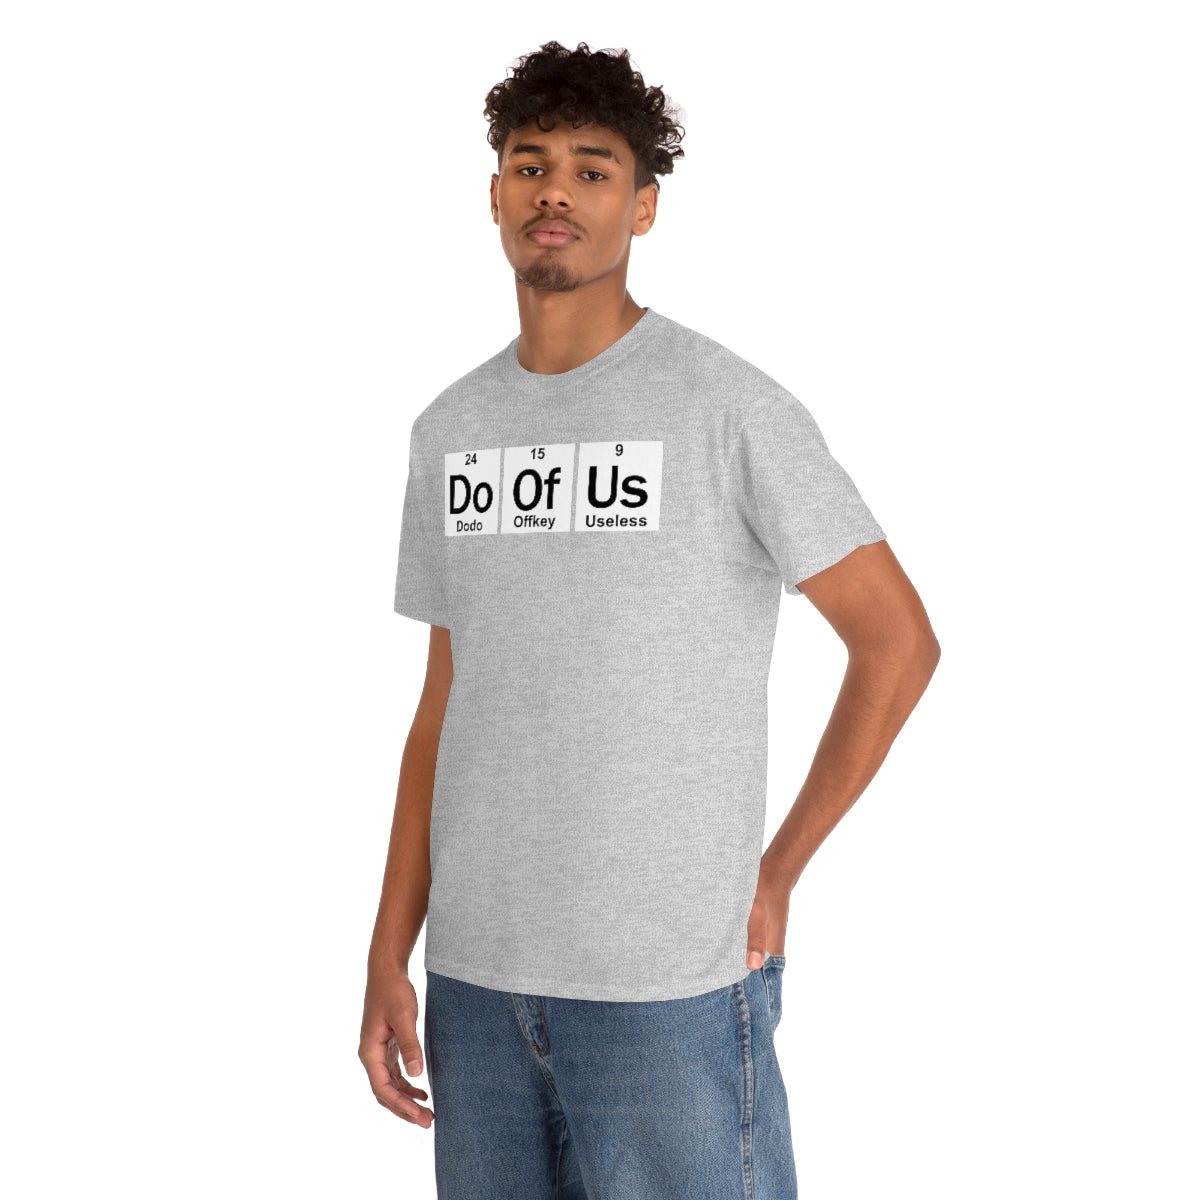 Element Style Doofus T-Shirt Unisex Short Sleeve Funny Gag GIft